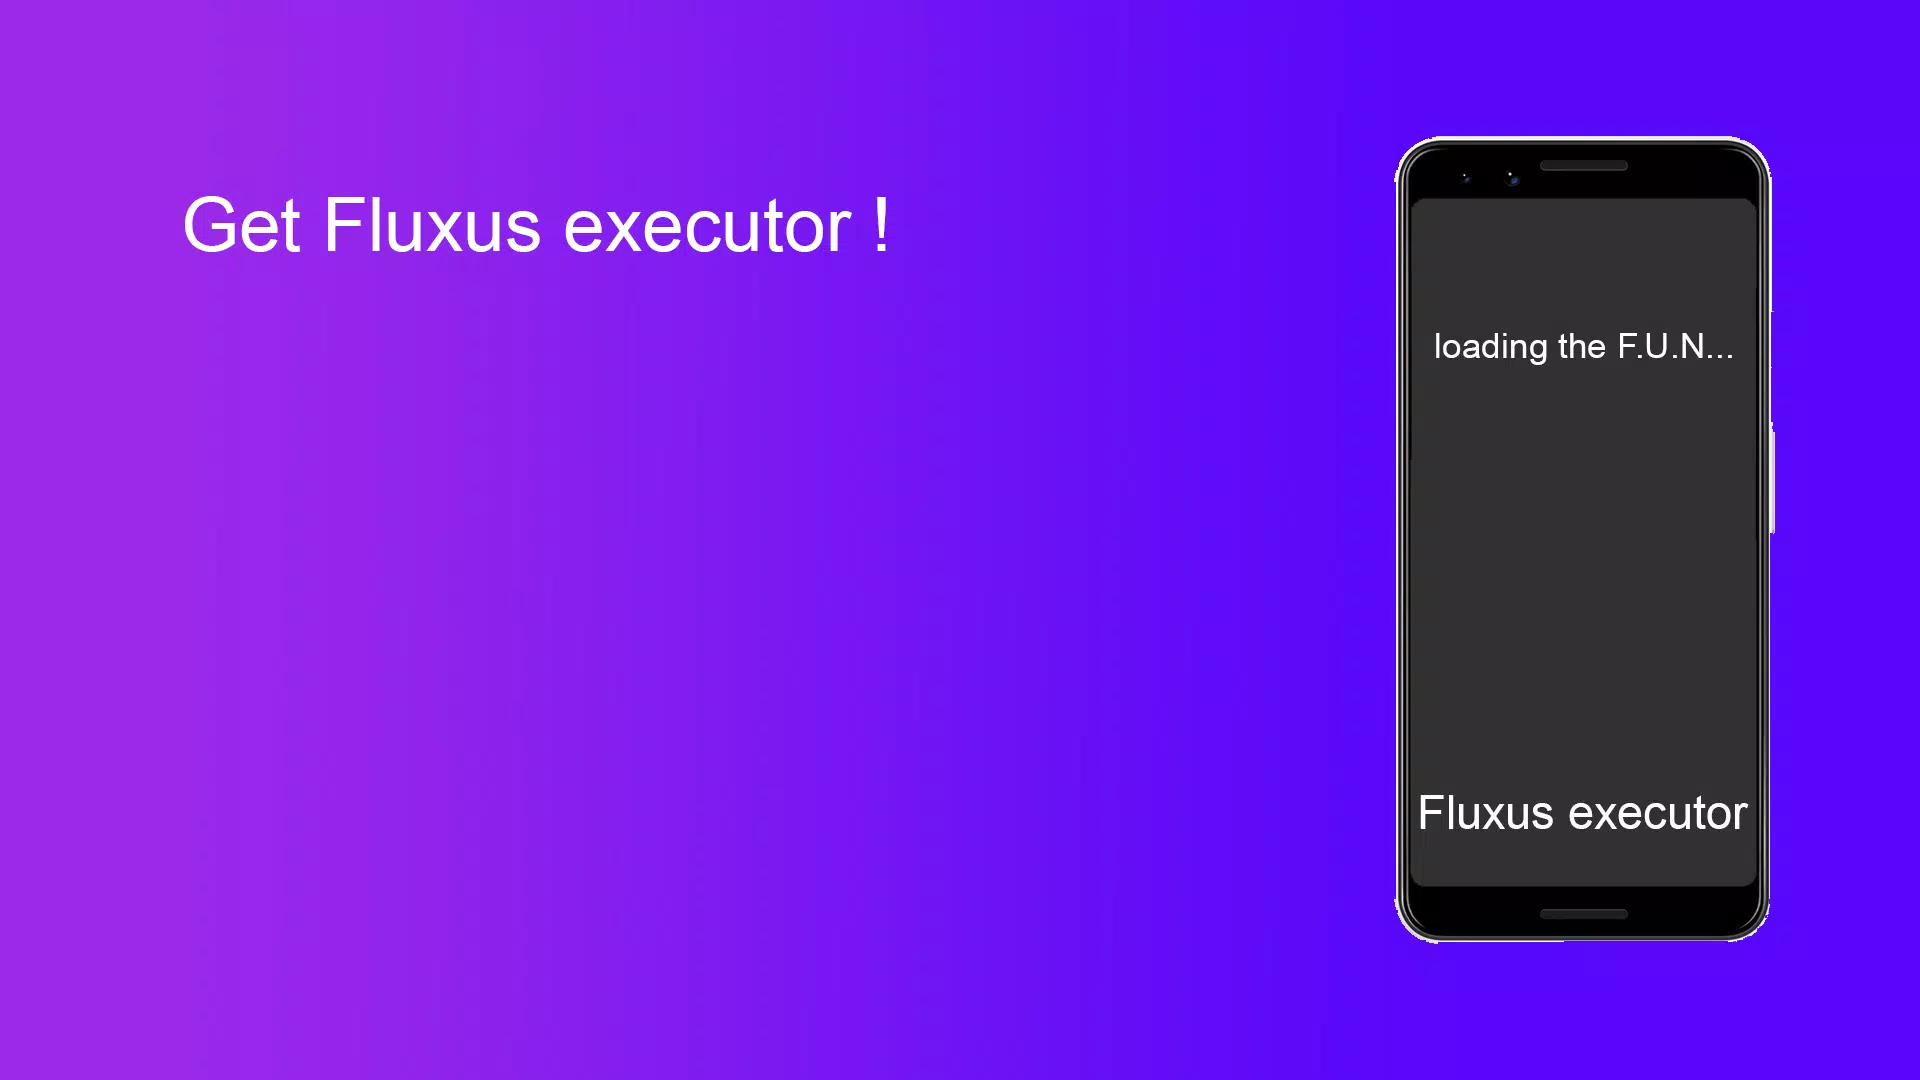 Fluxus Coral New Update 597, Fluxus Executor Mobile